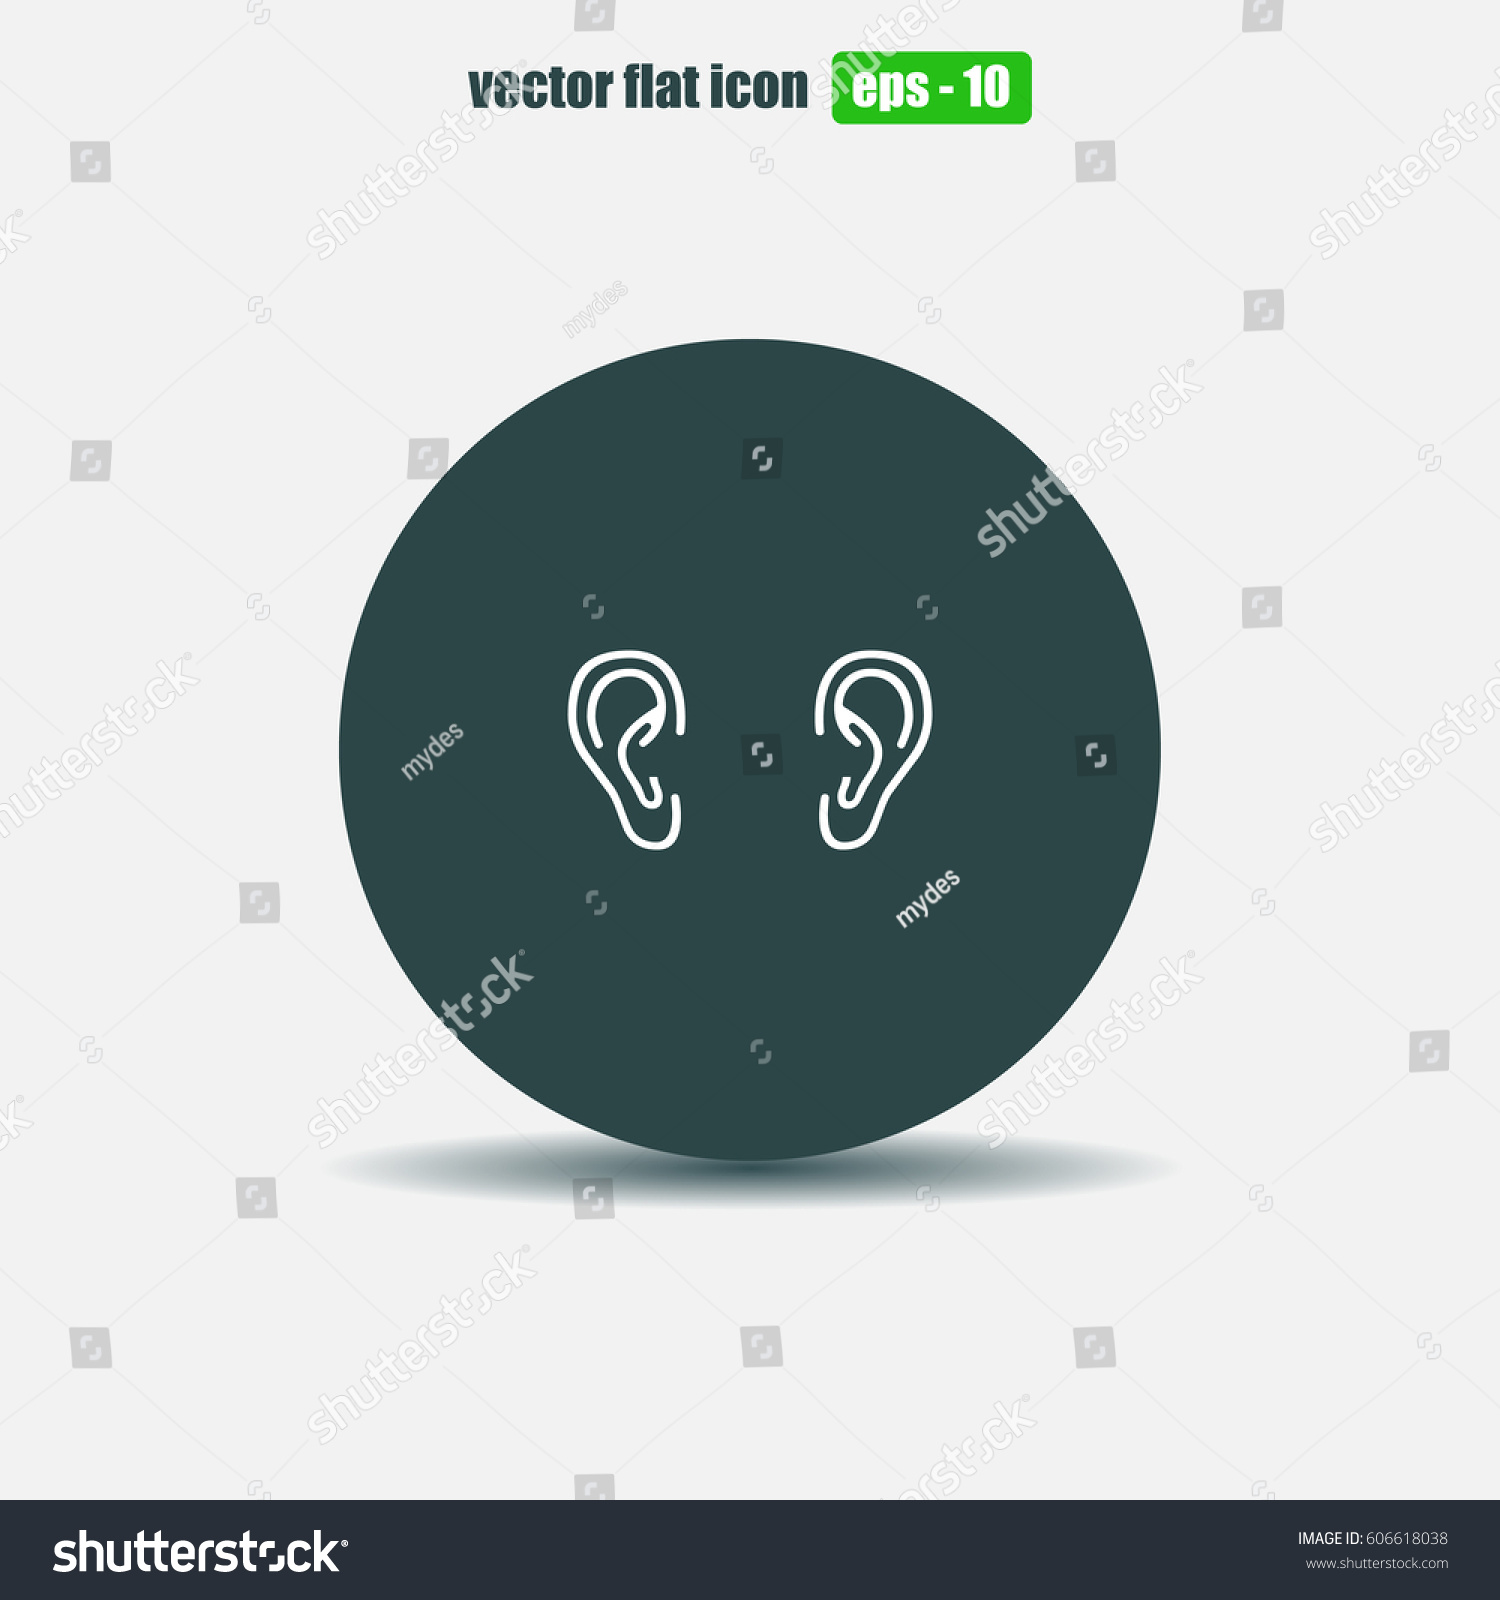 Two Ears Vector Illustration Stock Vector 606618038 - Shutterstock